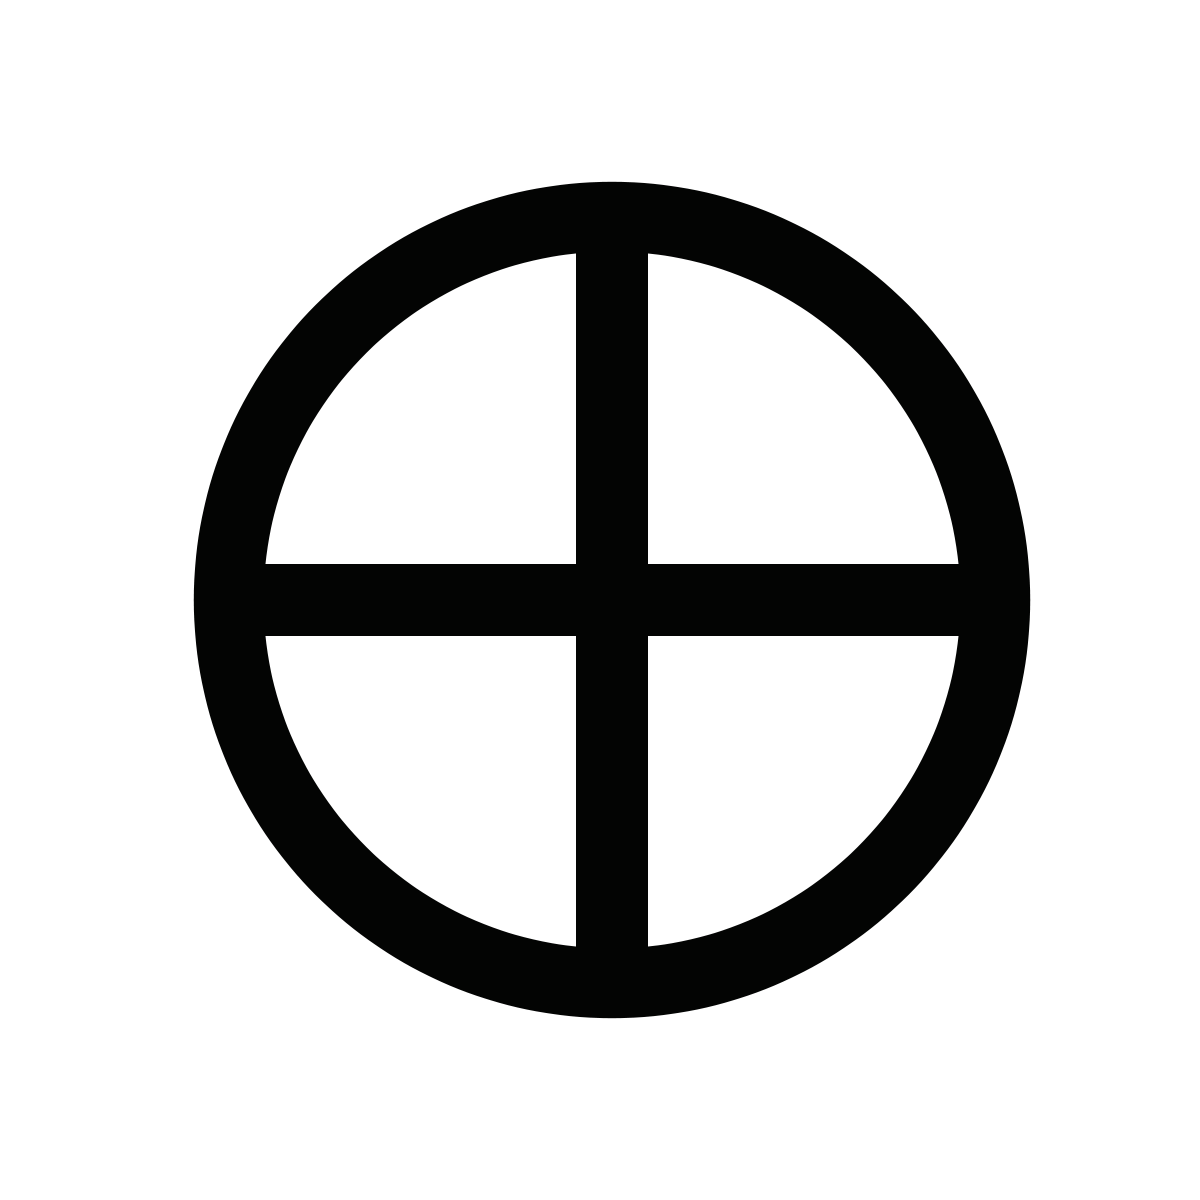 Planet ring logo